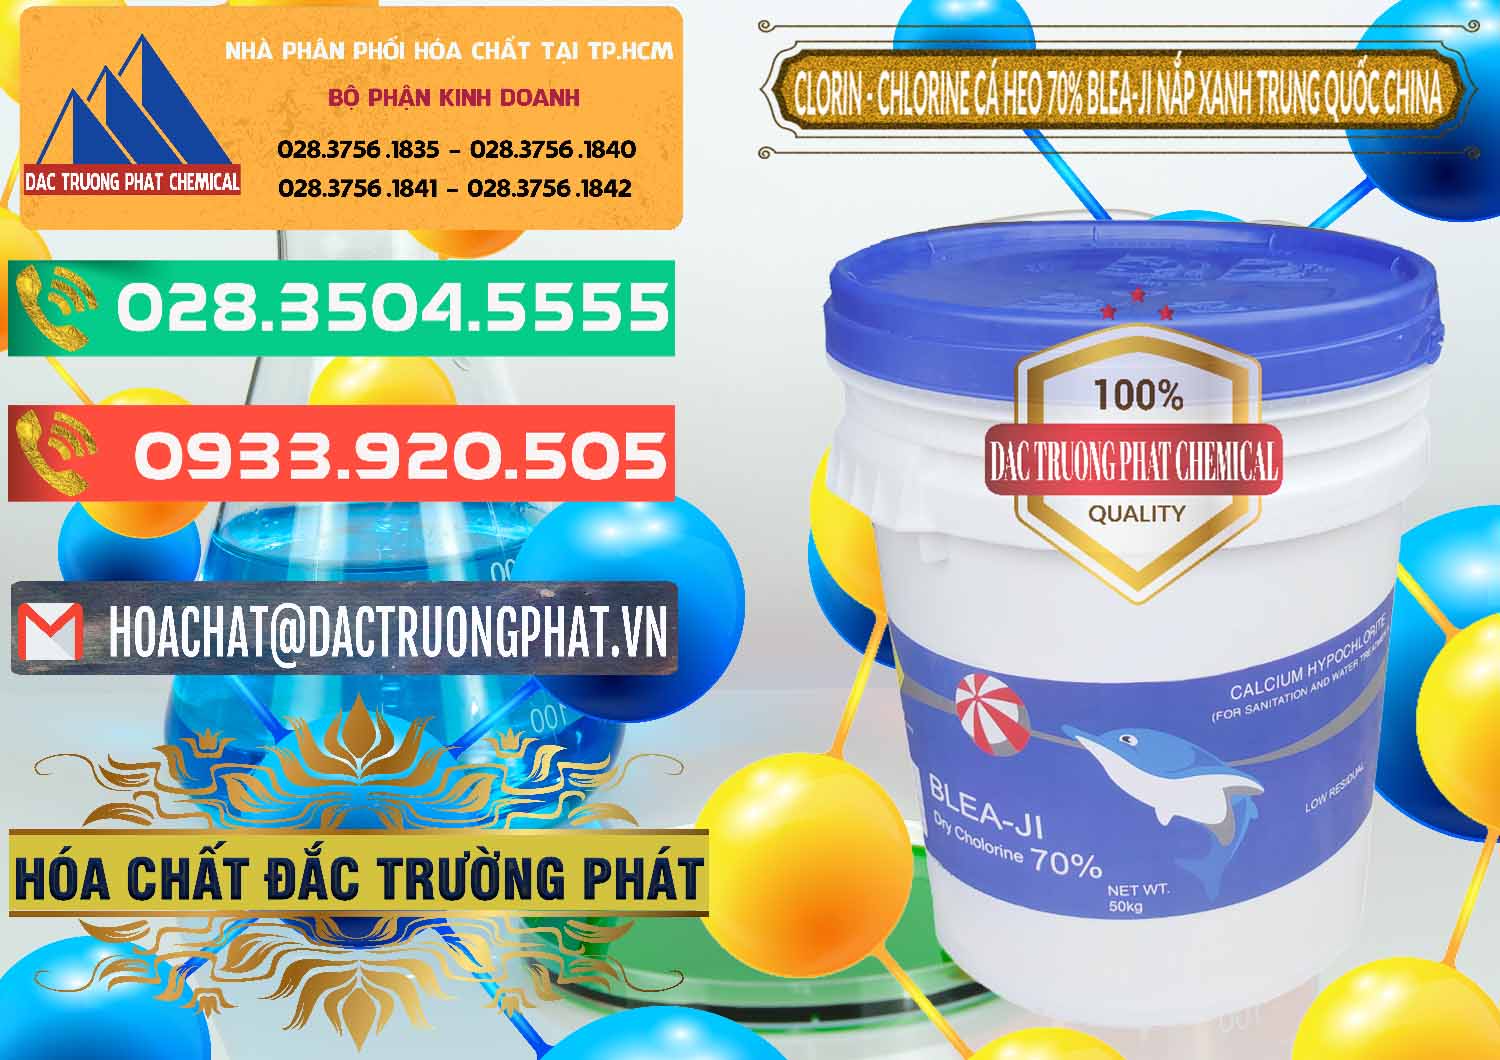 Công ty cung ứng ( bán ) Clorin - Chlorine Cá Heo 70% Cá Heo Blea-Ji Thùng Tròn Nắp Xanh Trung Quốc China - 0208 - Cty chuyên kinh doanh _ cung cấp hóa chất tại TP.HCM - congtyhoachat.com.vn